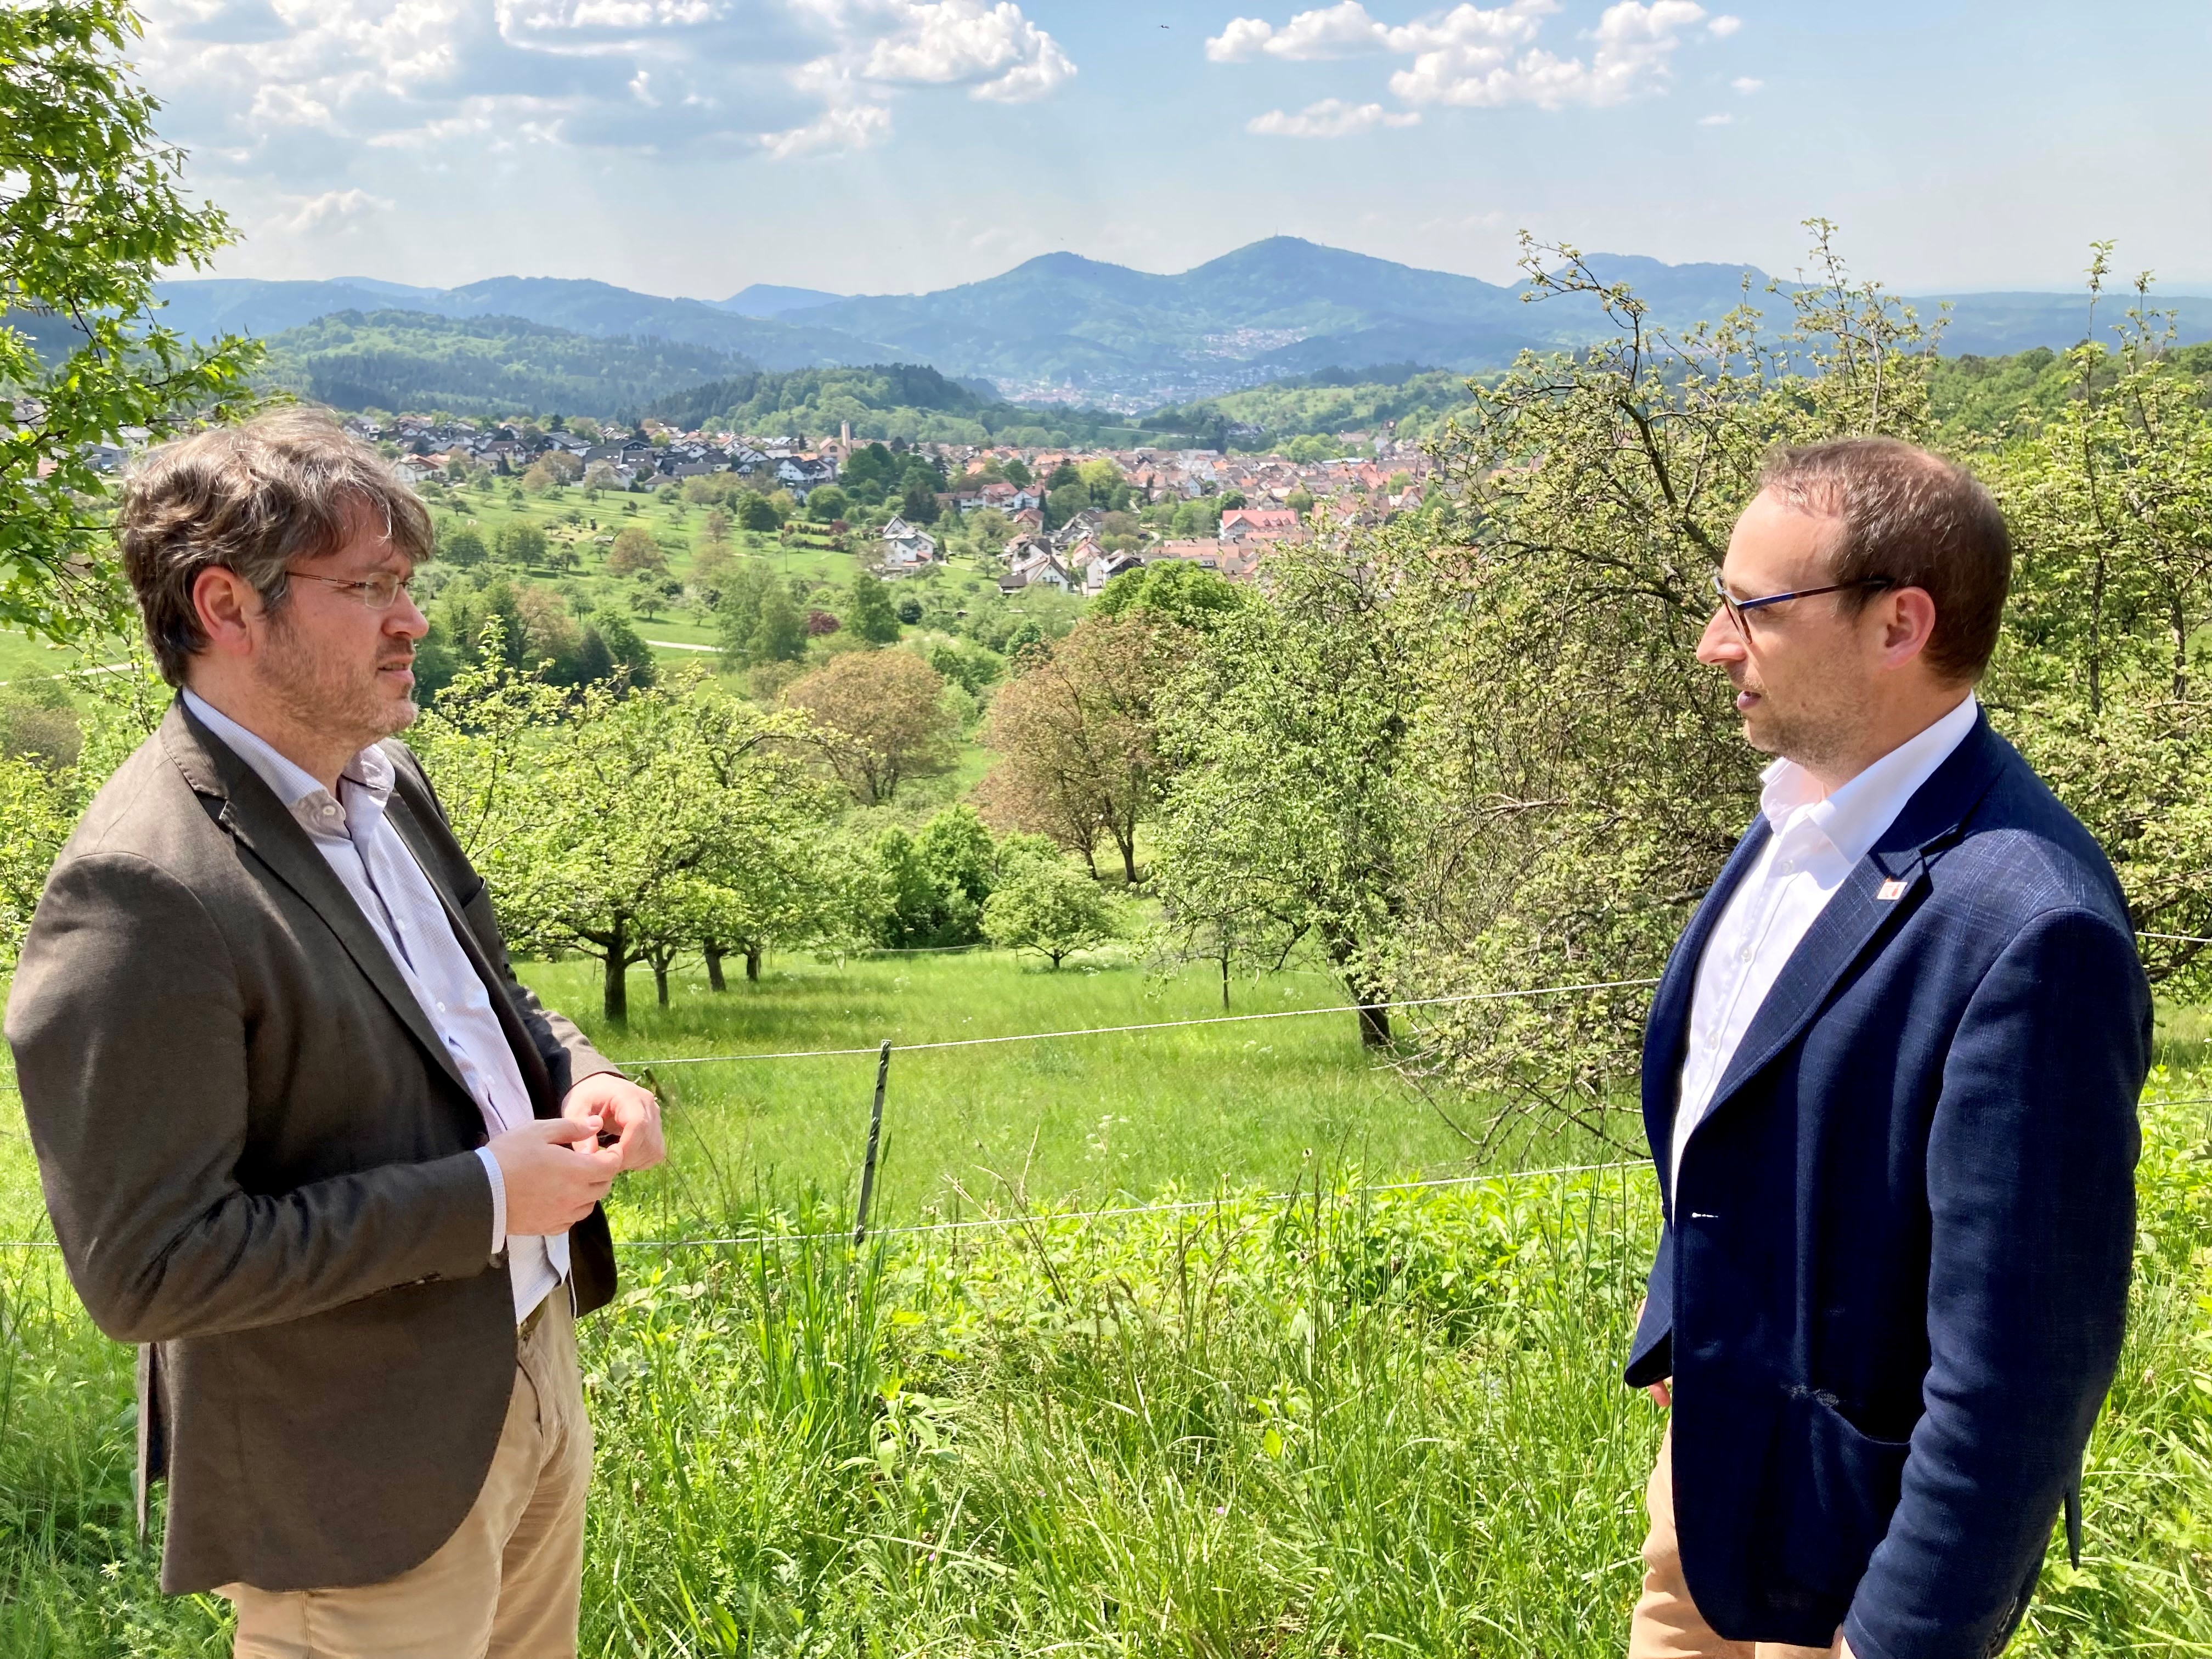 Auf diesem Bild sind der Landrat Dr. Christian Dusch (links) und Bürgermeister Markus Burger im Gespräch vor dem Panorama von Loffenau zu sehen.